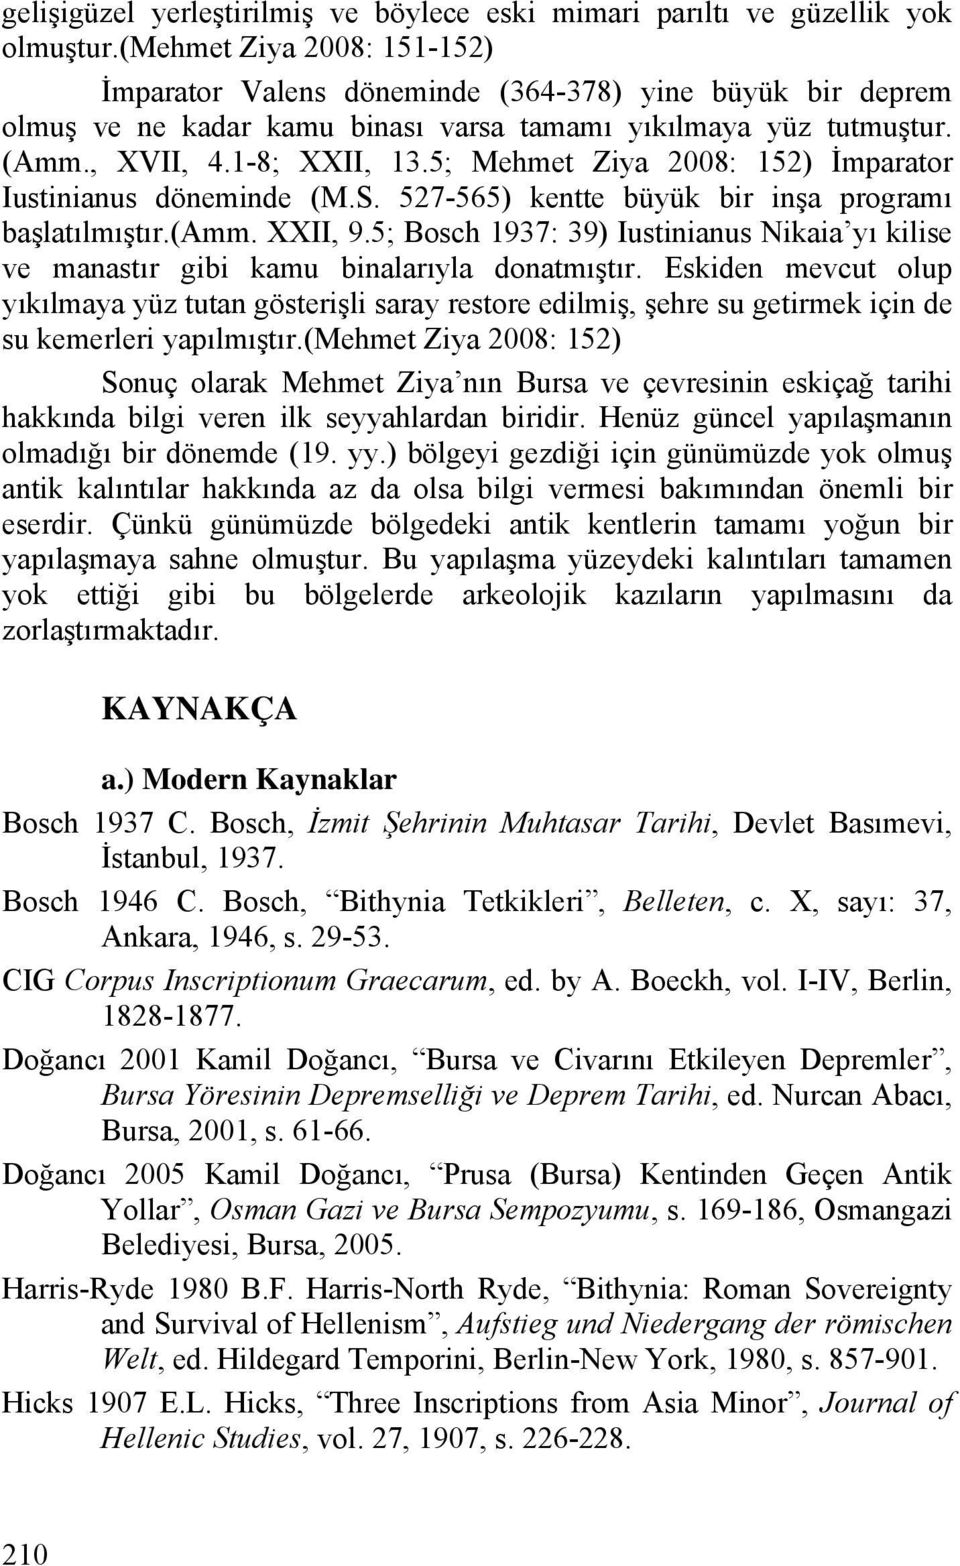 5; Mehmet Ziya 2008: 152) İmparator Iustinianus döneminde (M.S. 527-565) kentte büyük bir inşa programı başlatılmıştır.(amm. XXII, 9.